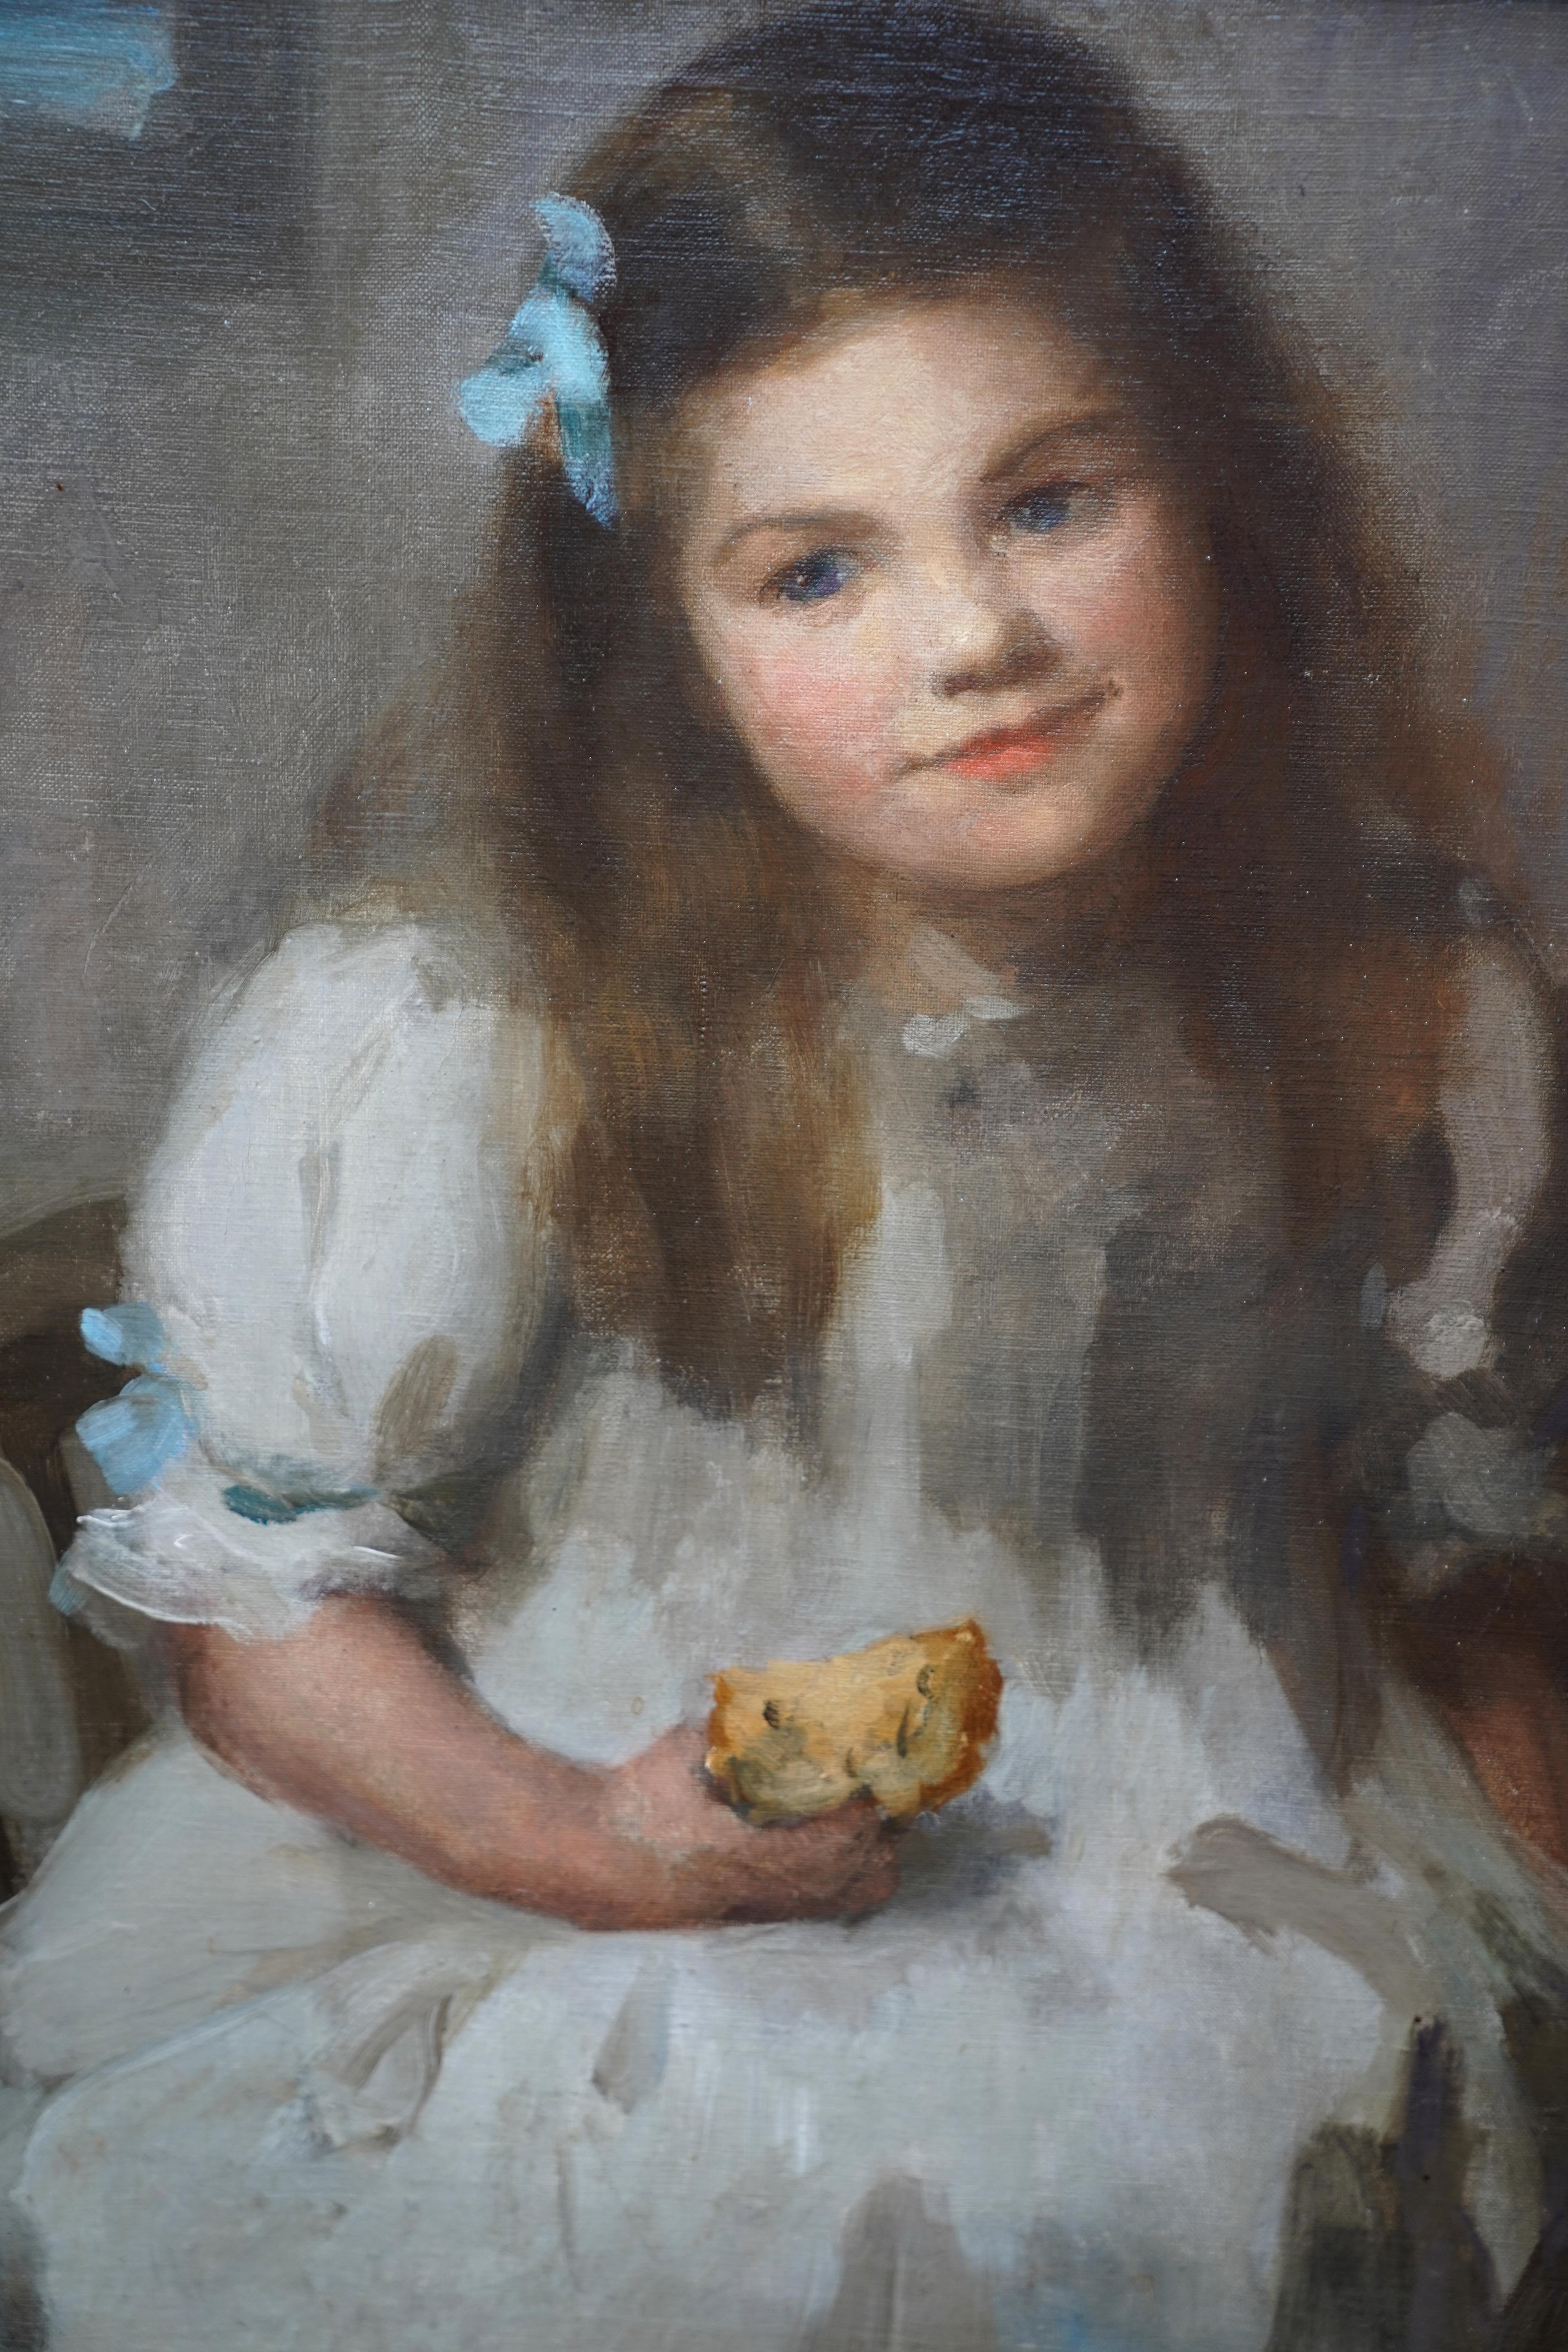 Dieses schöne britische impressionistische Porträt-Ölgemälde stammt von der Künstlerin Sybil Maude. Das um 1905 entstandene Gemälde zeigt ein charmantes, sitzendes Porträt eines jungen kornischen Mädchens, das ein Safranbrötchen, ein traditionelles